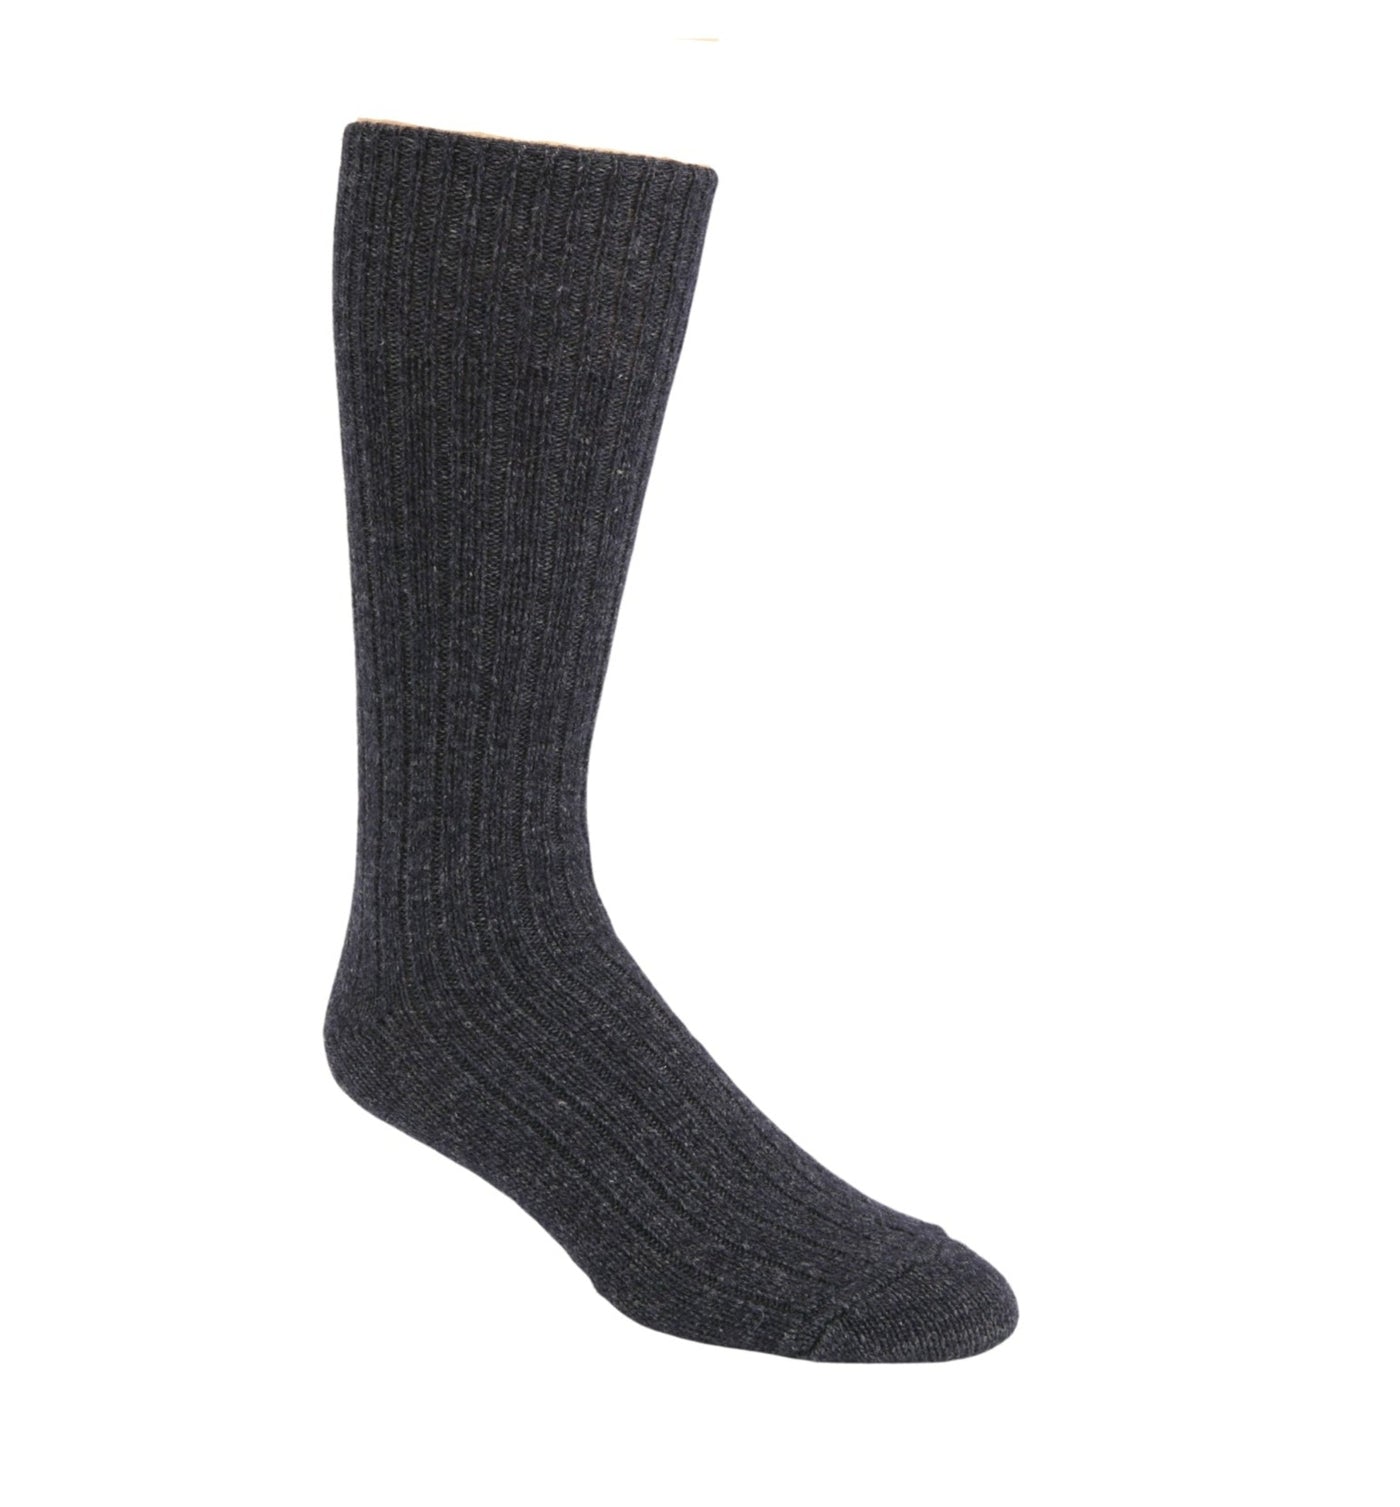 Lt. Grey Wool Blend Thermal Hiking Socks 